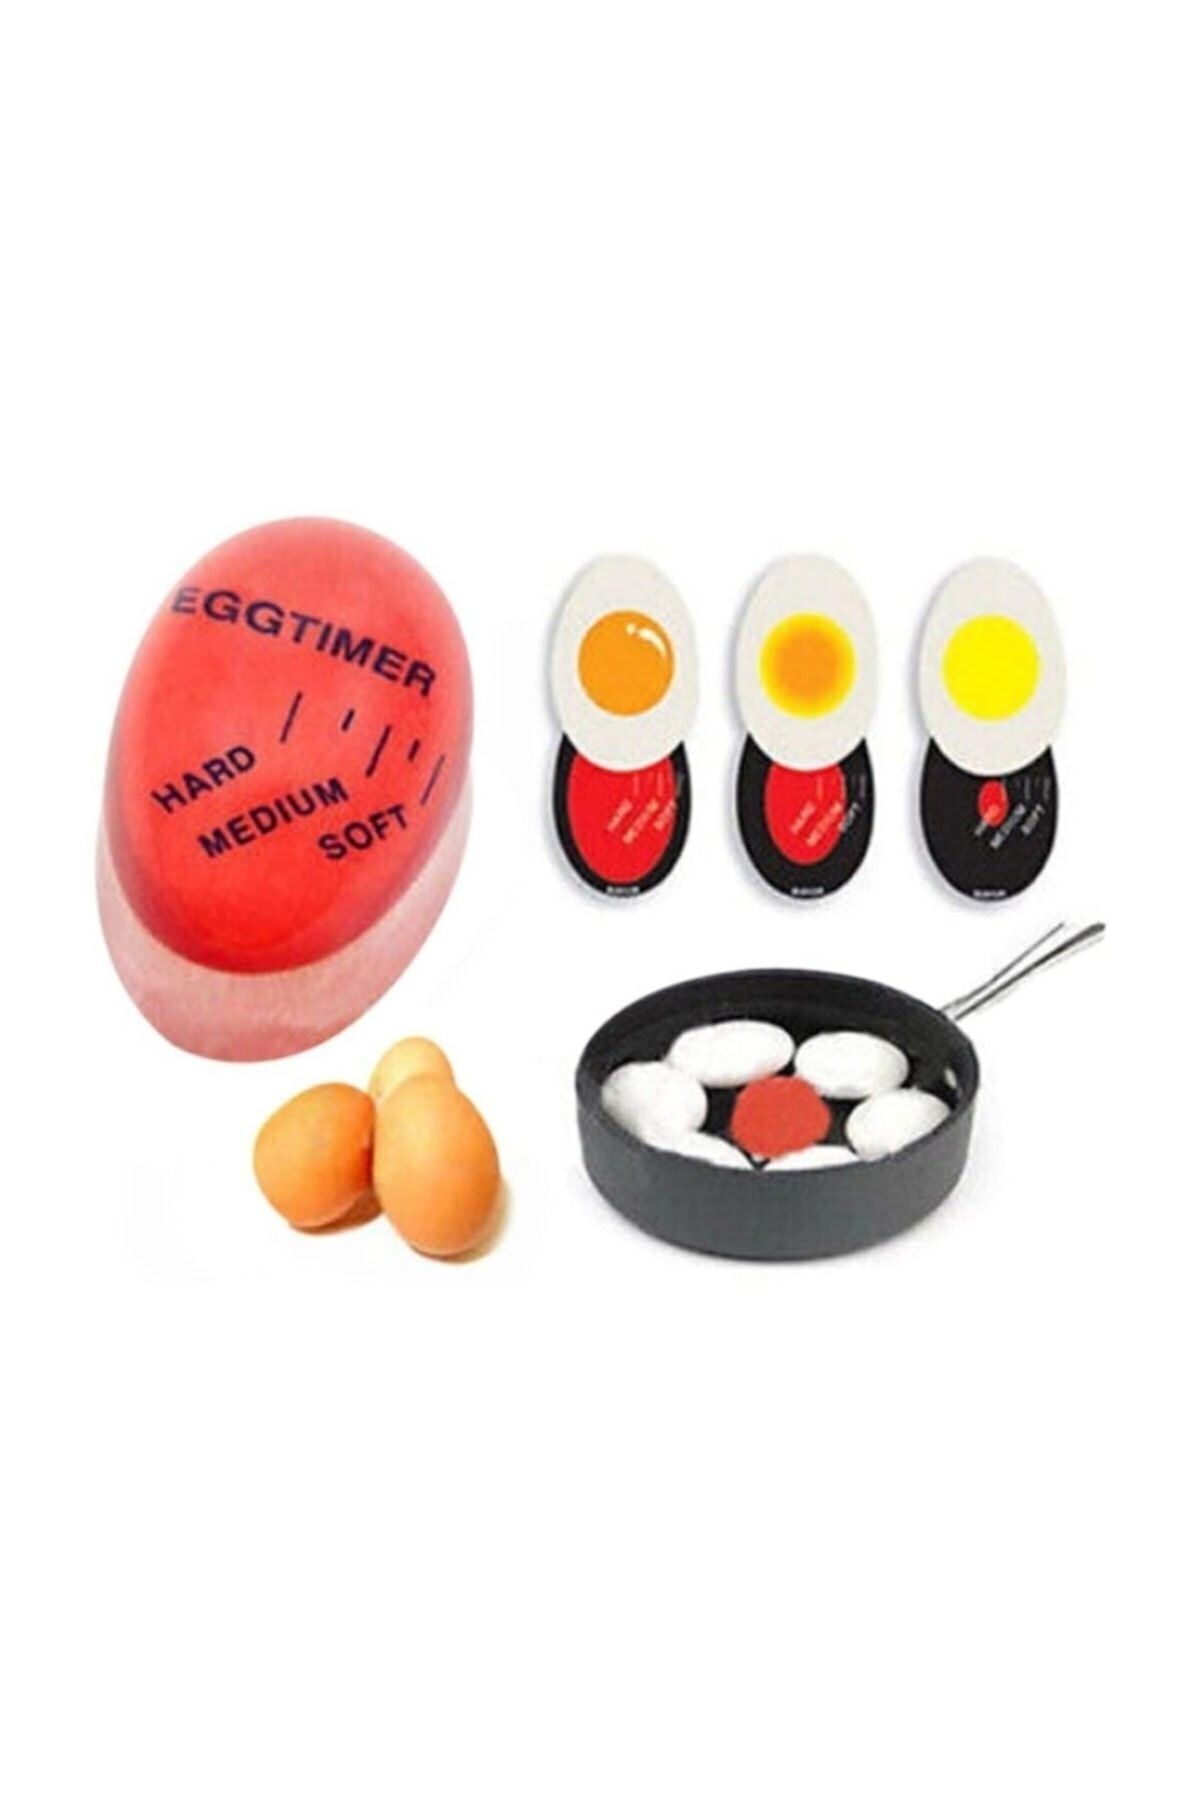 pazariz 2 Adet Dublör Yumurta Zamanlayıcı Egg Timer Pişirme Zaman Ayarlama